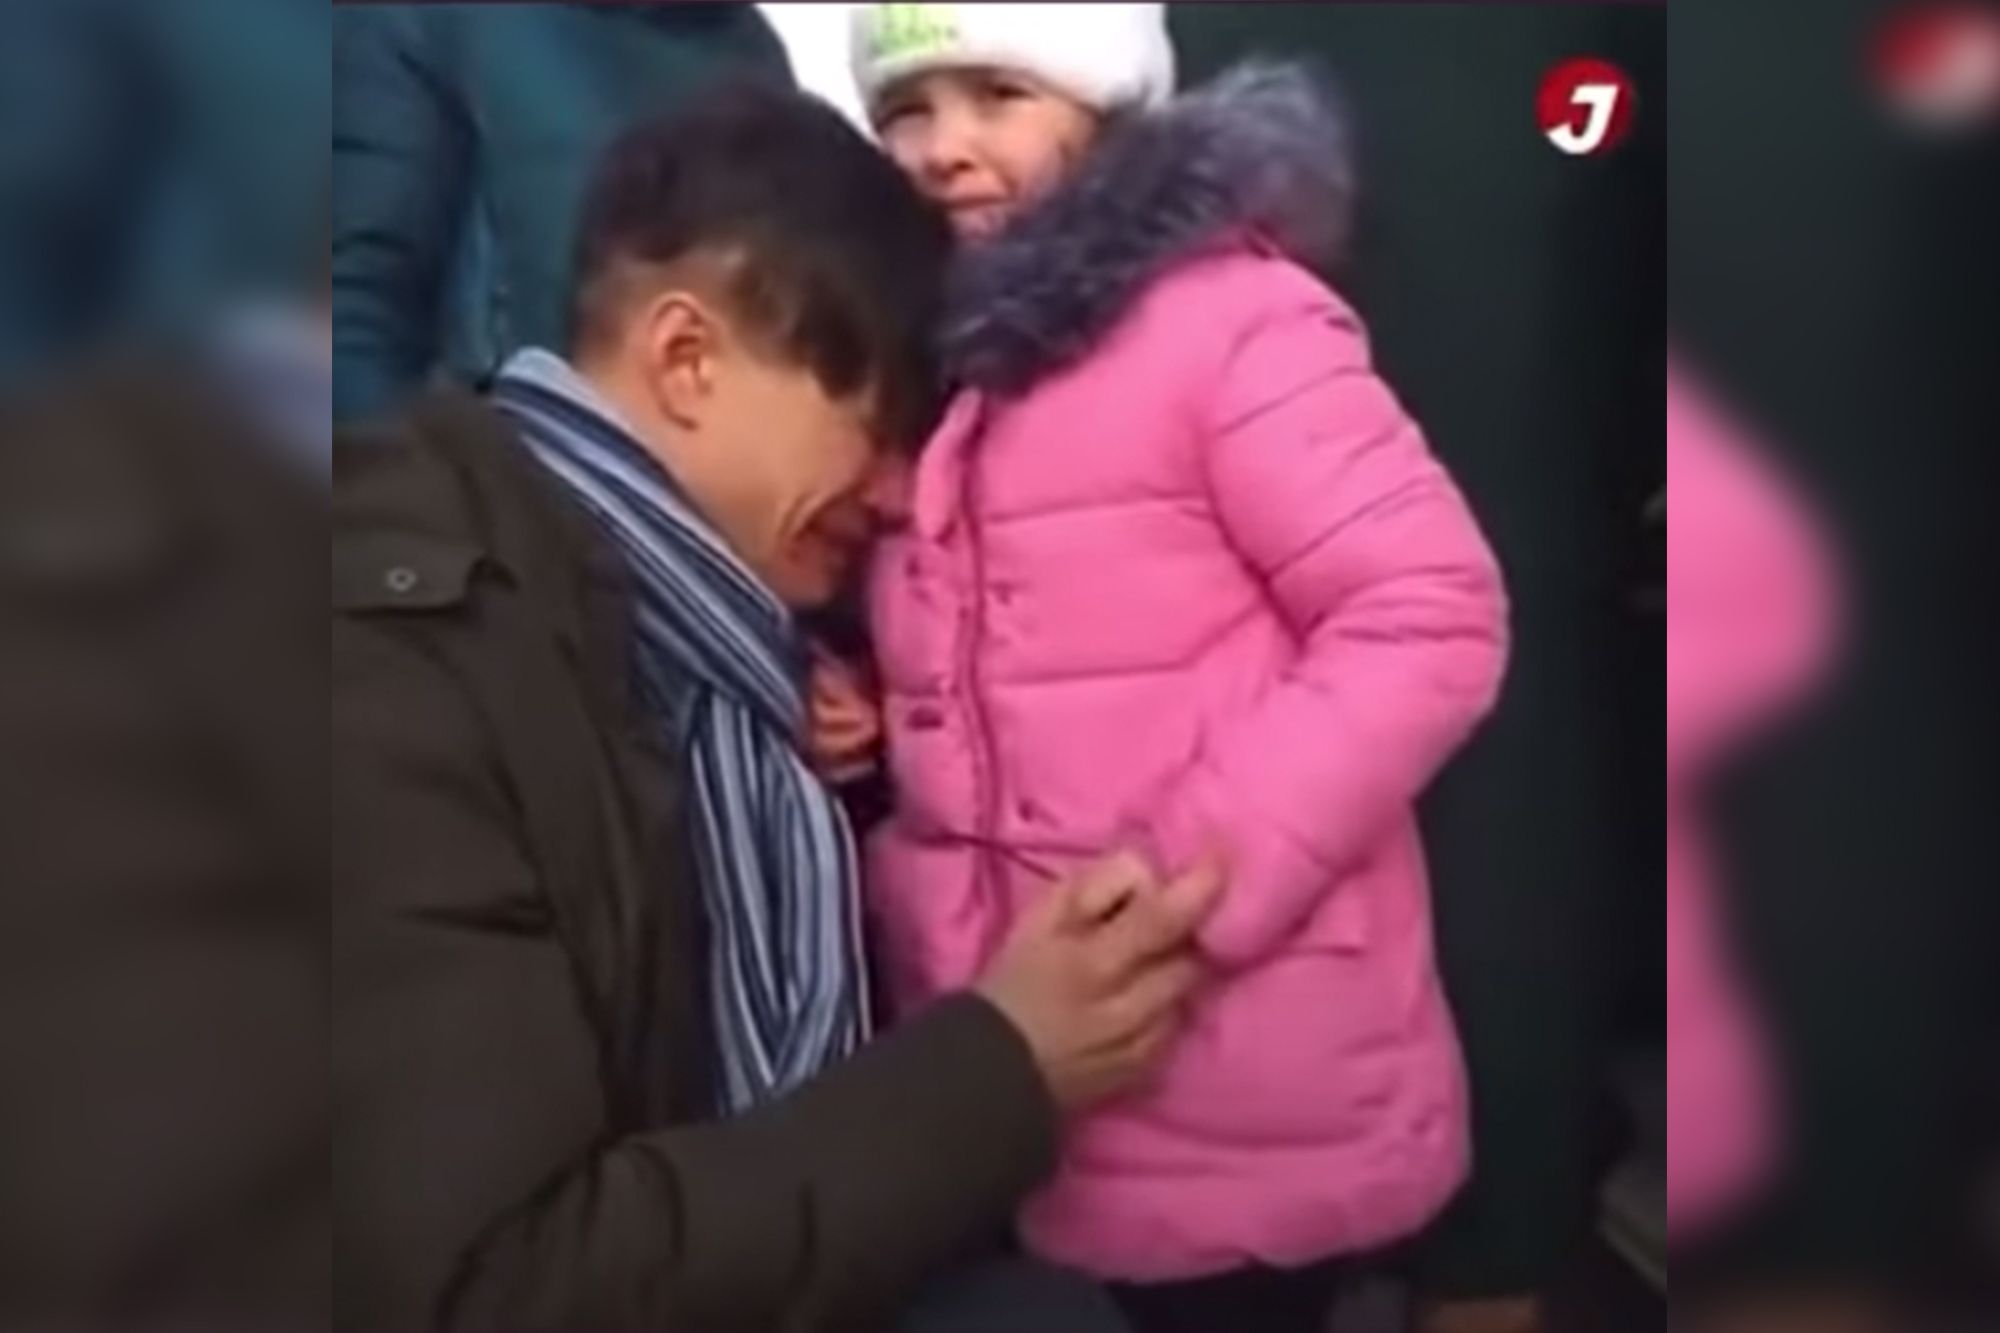 Chiến sự Ukraine: Video ông bố bật khóc tiễn con gái nhỏ đi sơ tán khiến nhiều người xúc động - Ảnh 5.